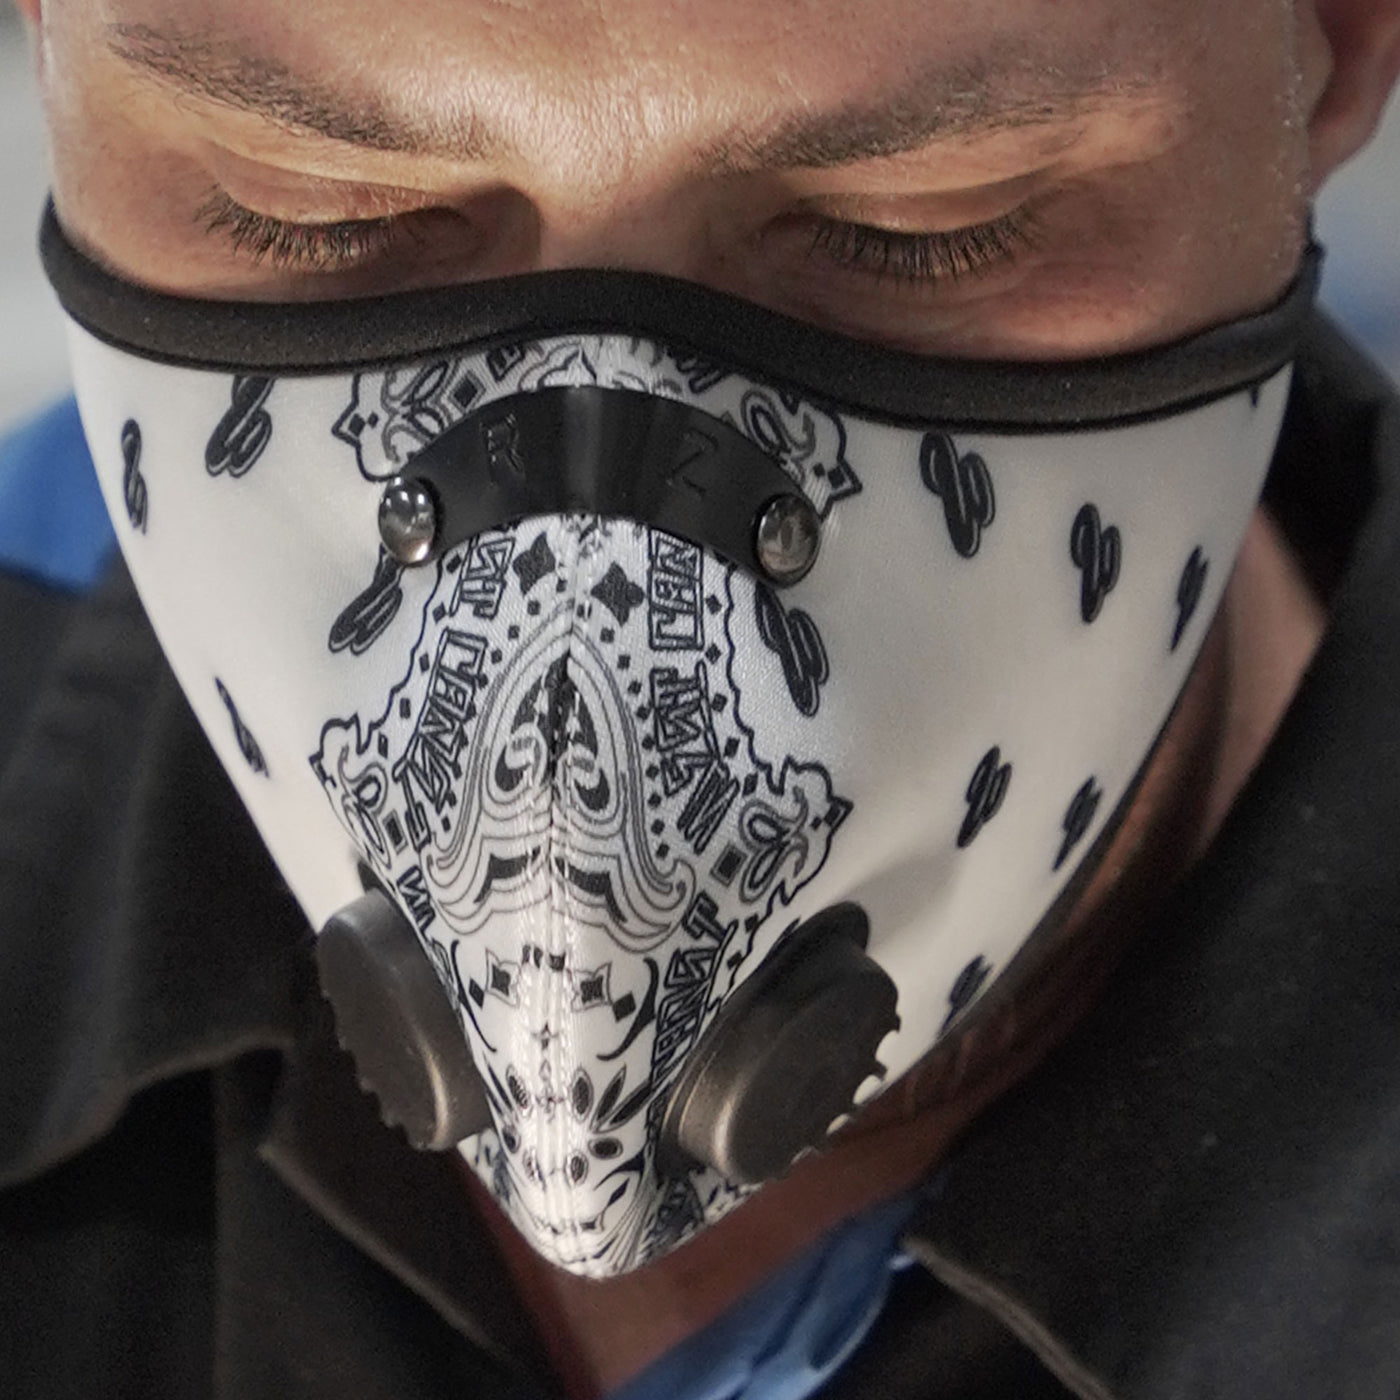 RZ x West Coast Customs Face Mask - Bandit